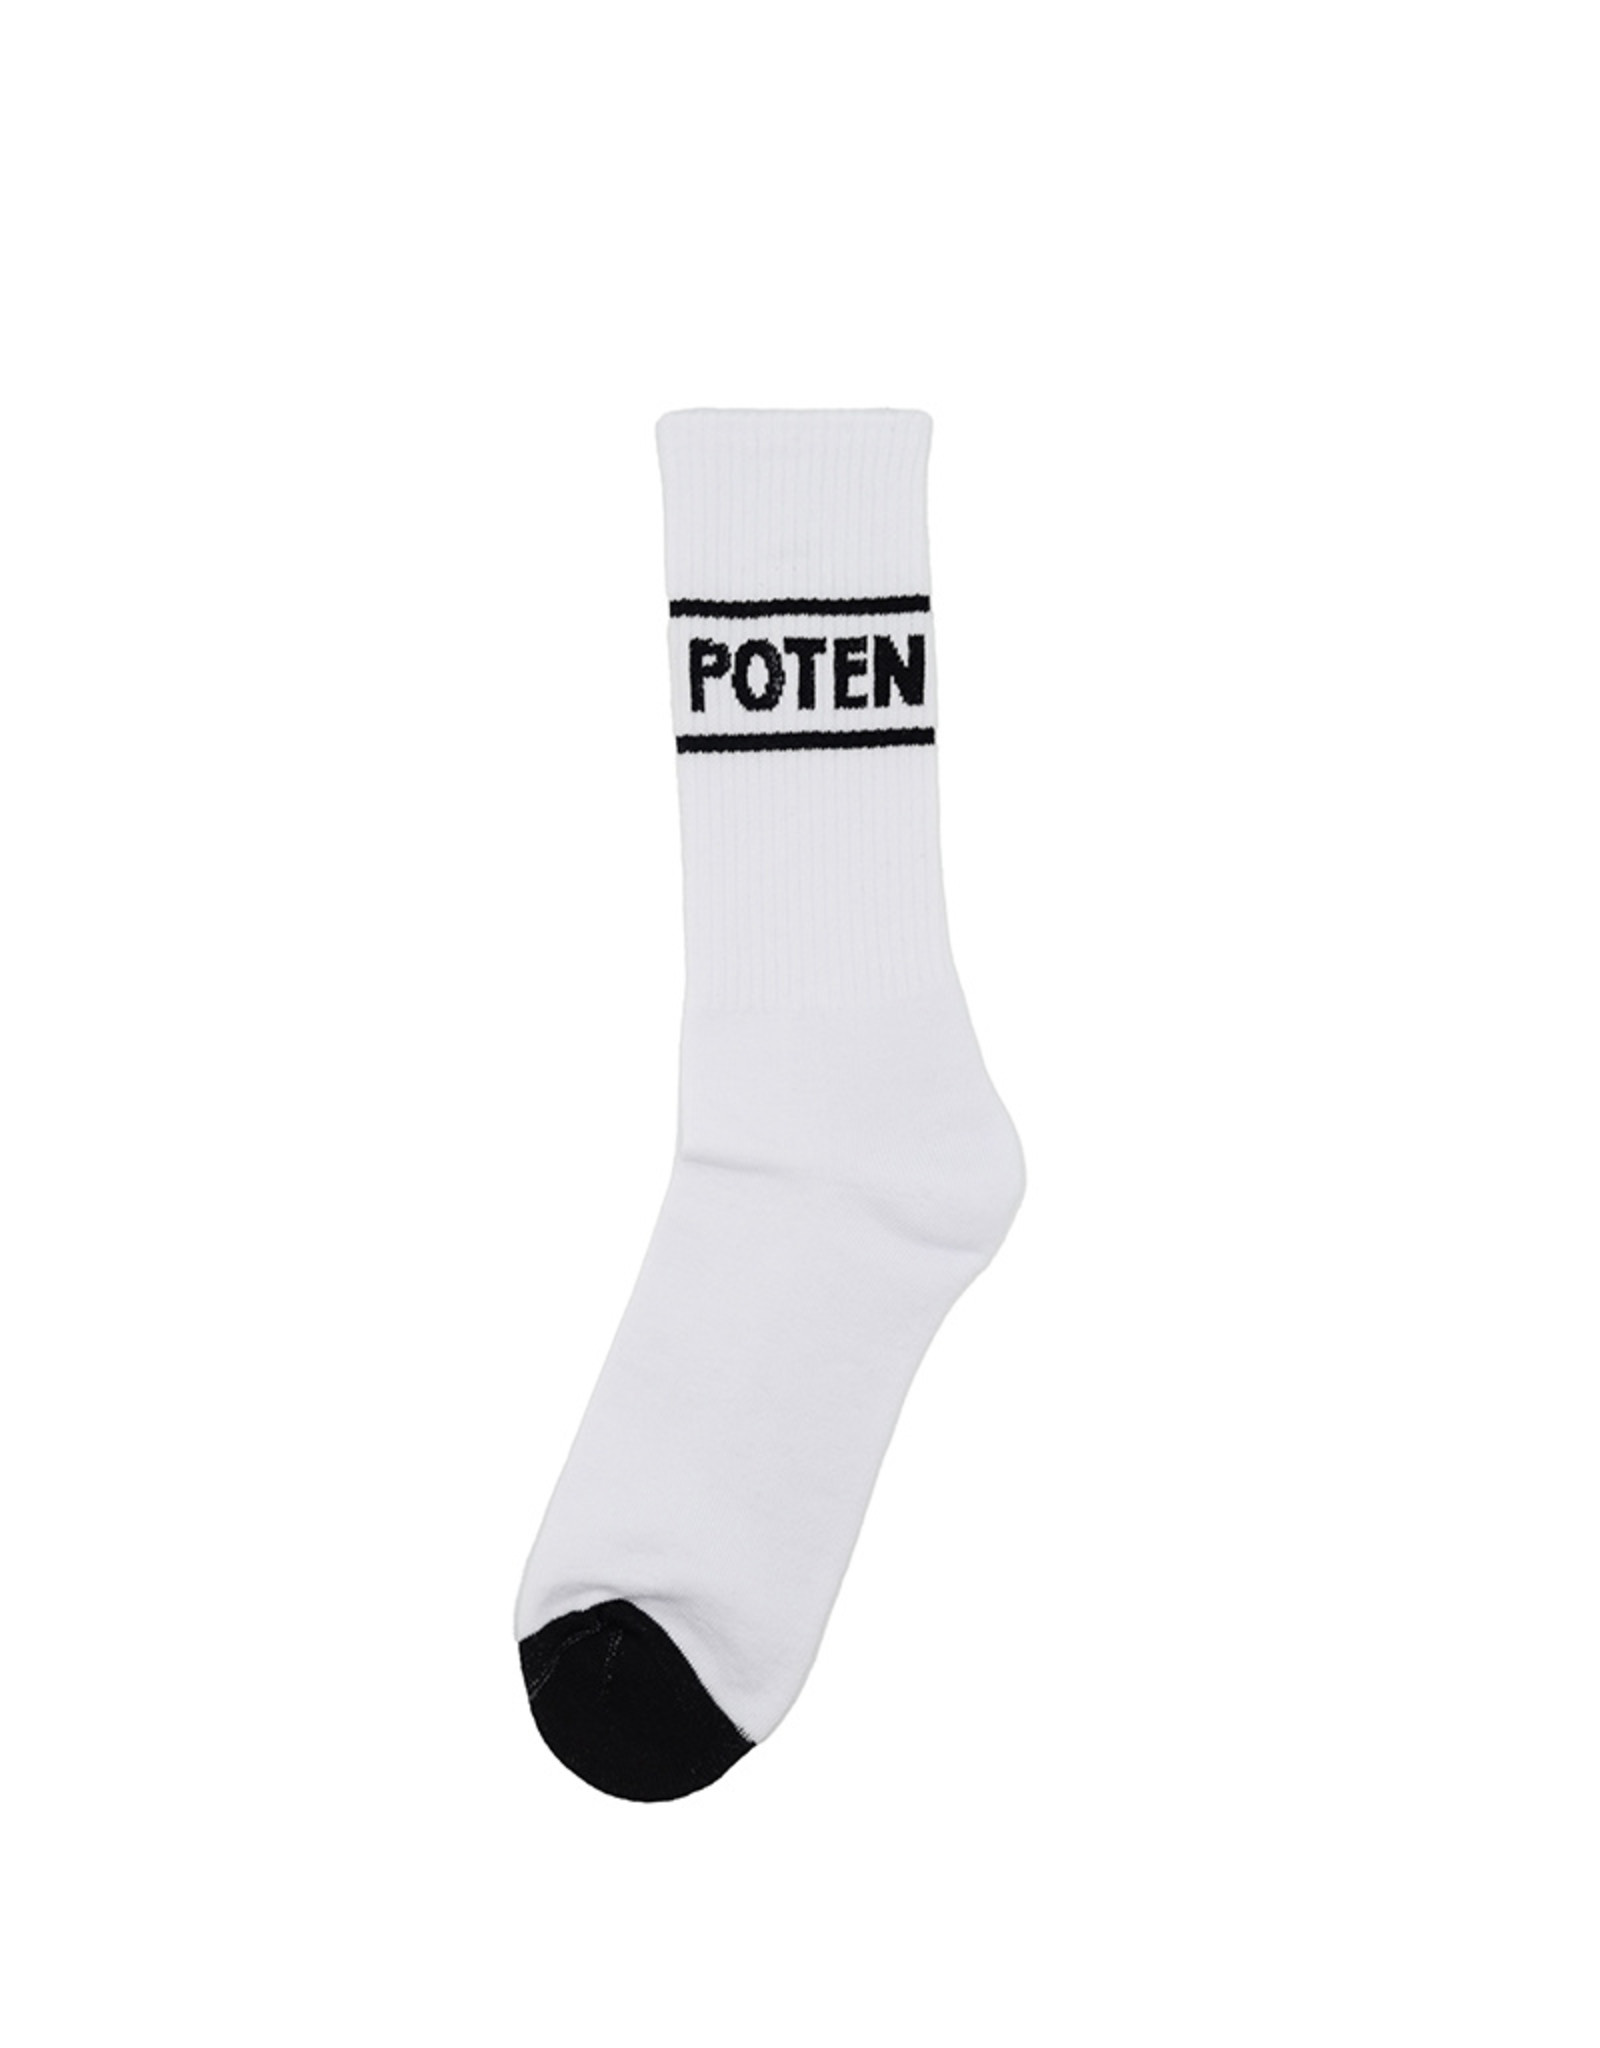 The Hague's Finest Korte Poten sokken